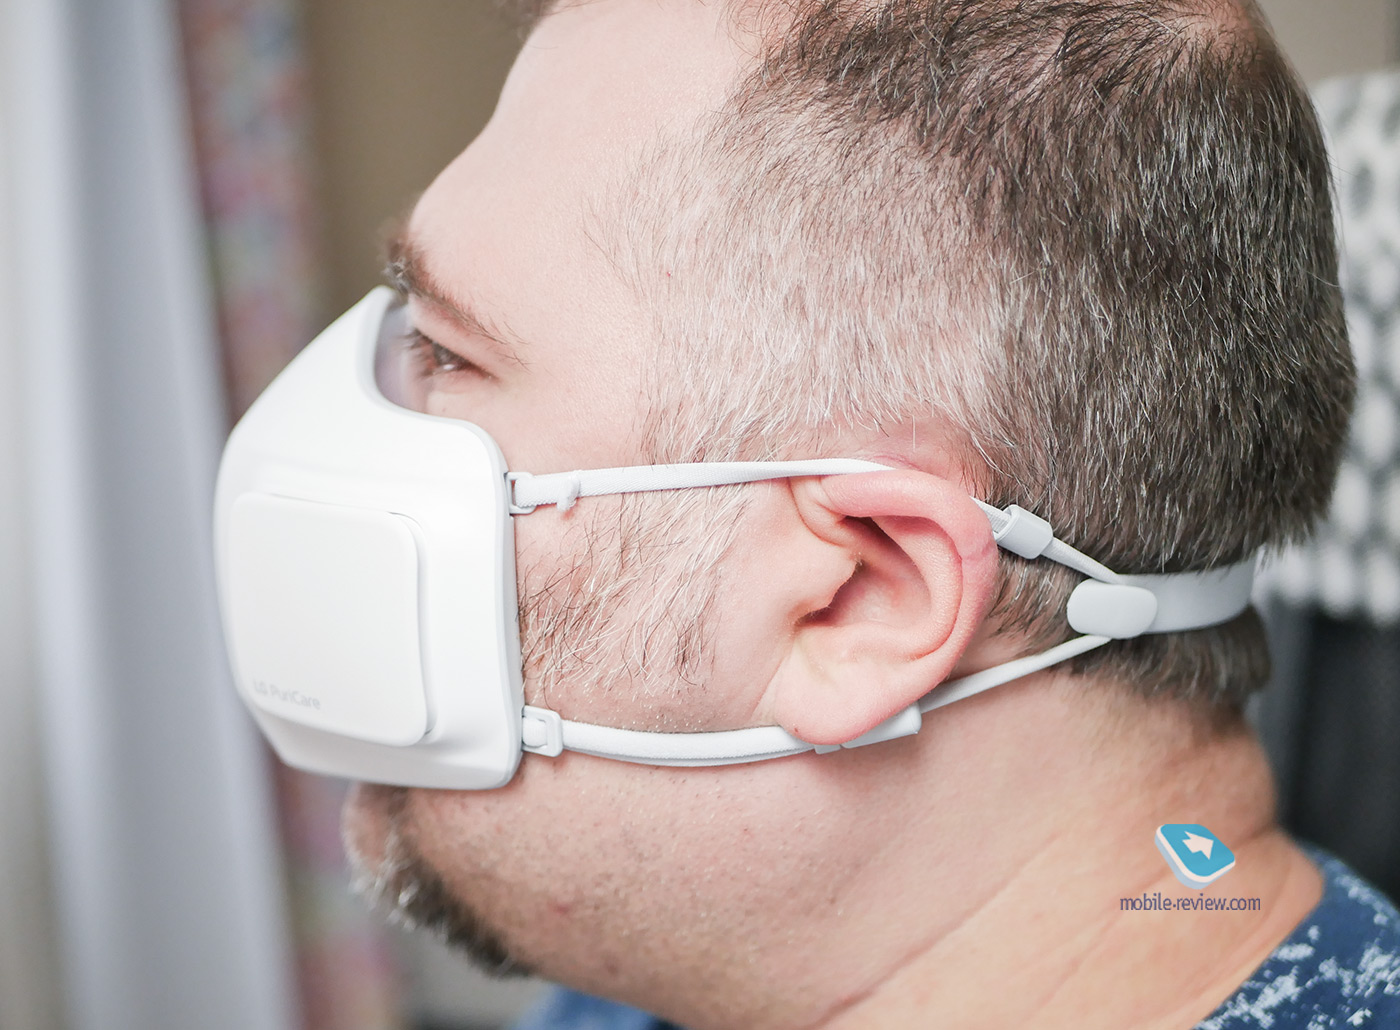 Examen du masque LG PuriCare Wearable Air Purifier - jouet coûteux ou un appareil moderne important ? » width=